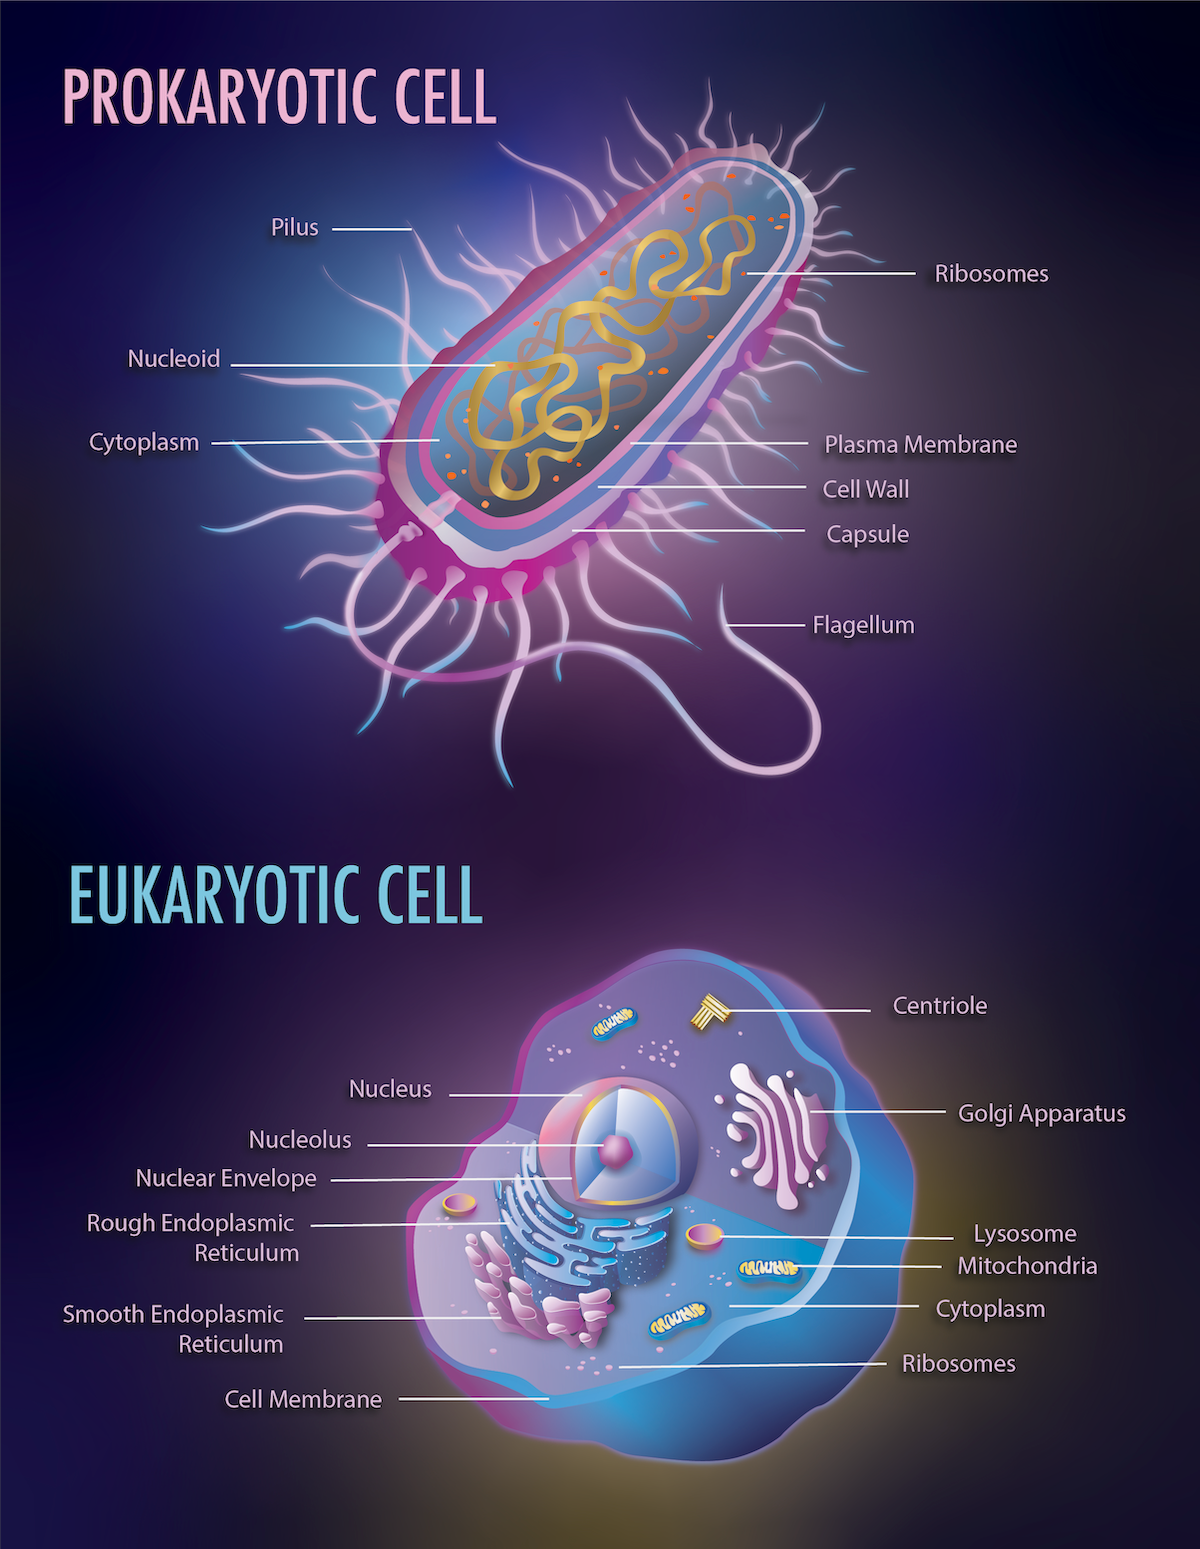 Prokaryotic & Eukaryotic Cell Illustration